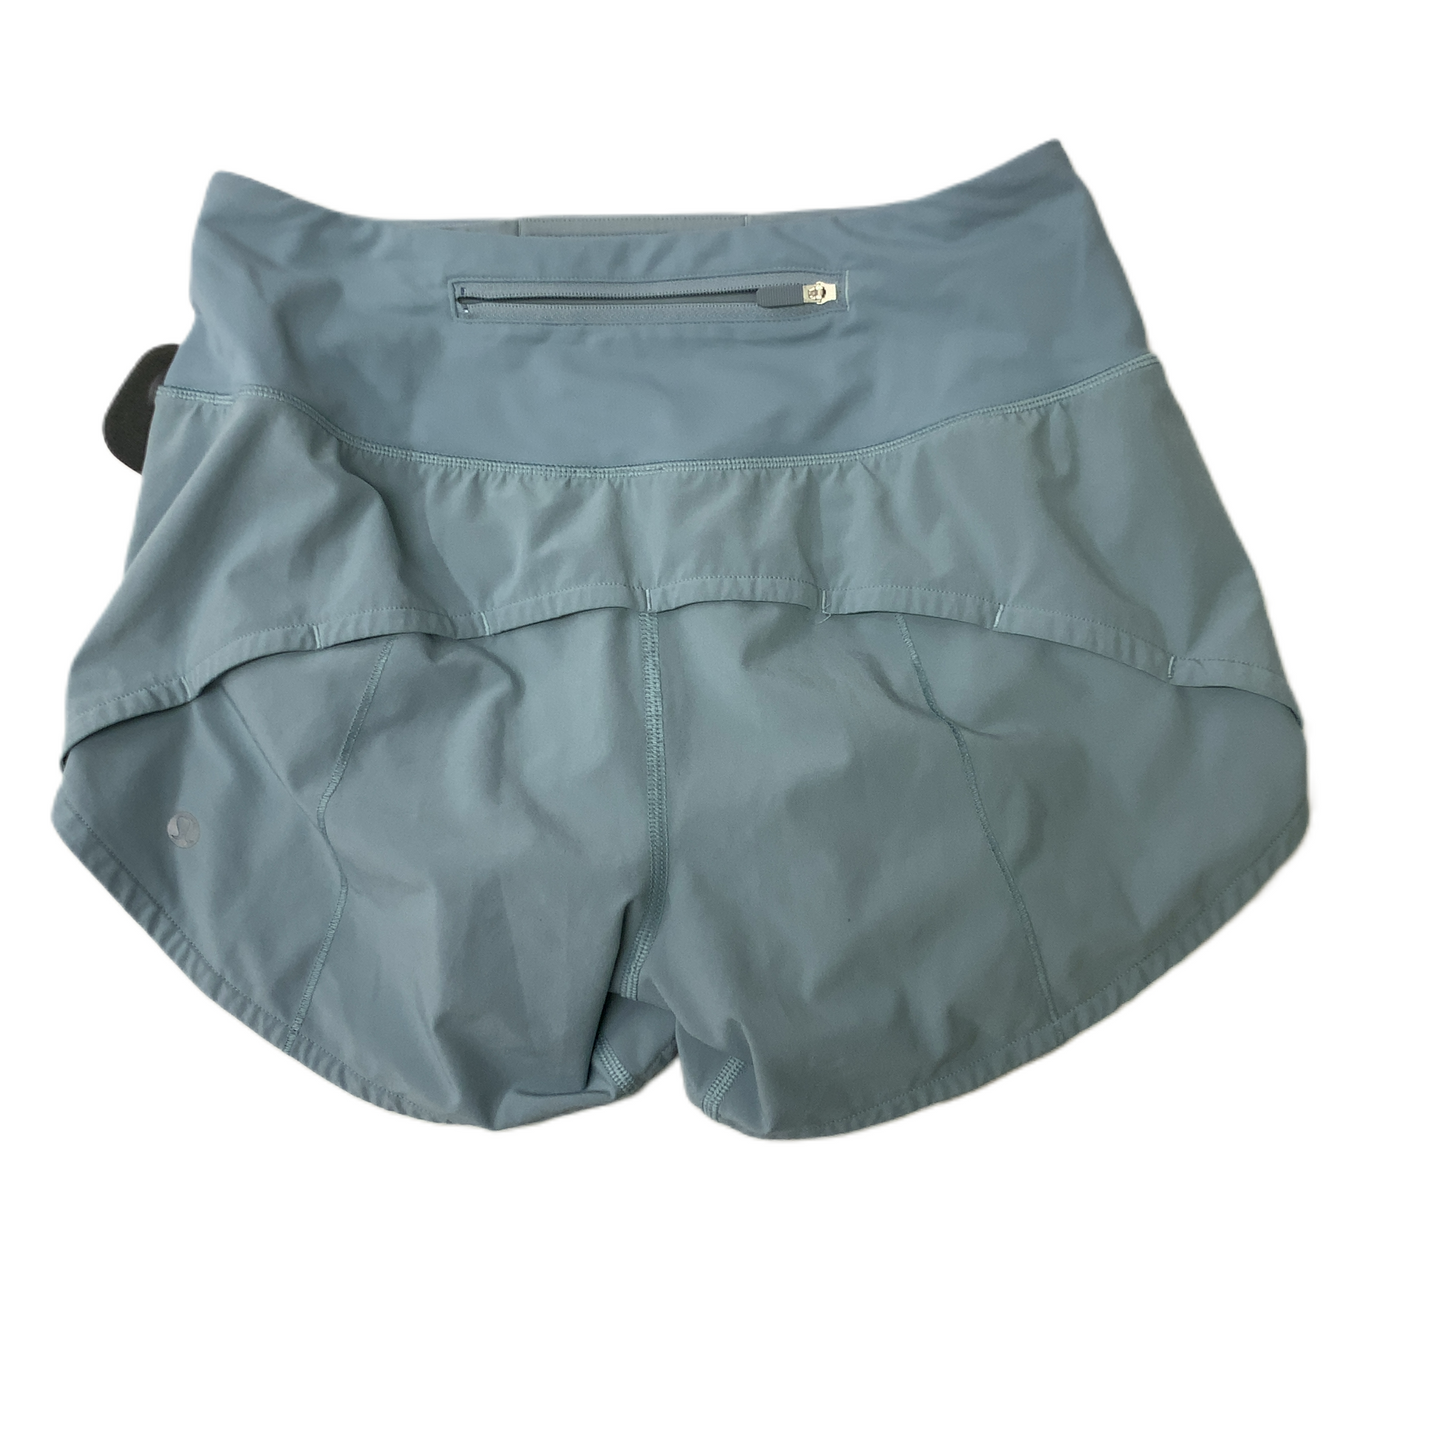 Blue  Athletic Shorts By Lululemon  Size: Xs